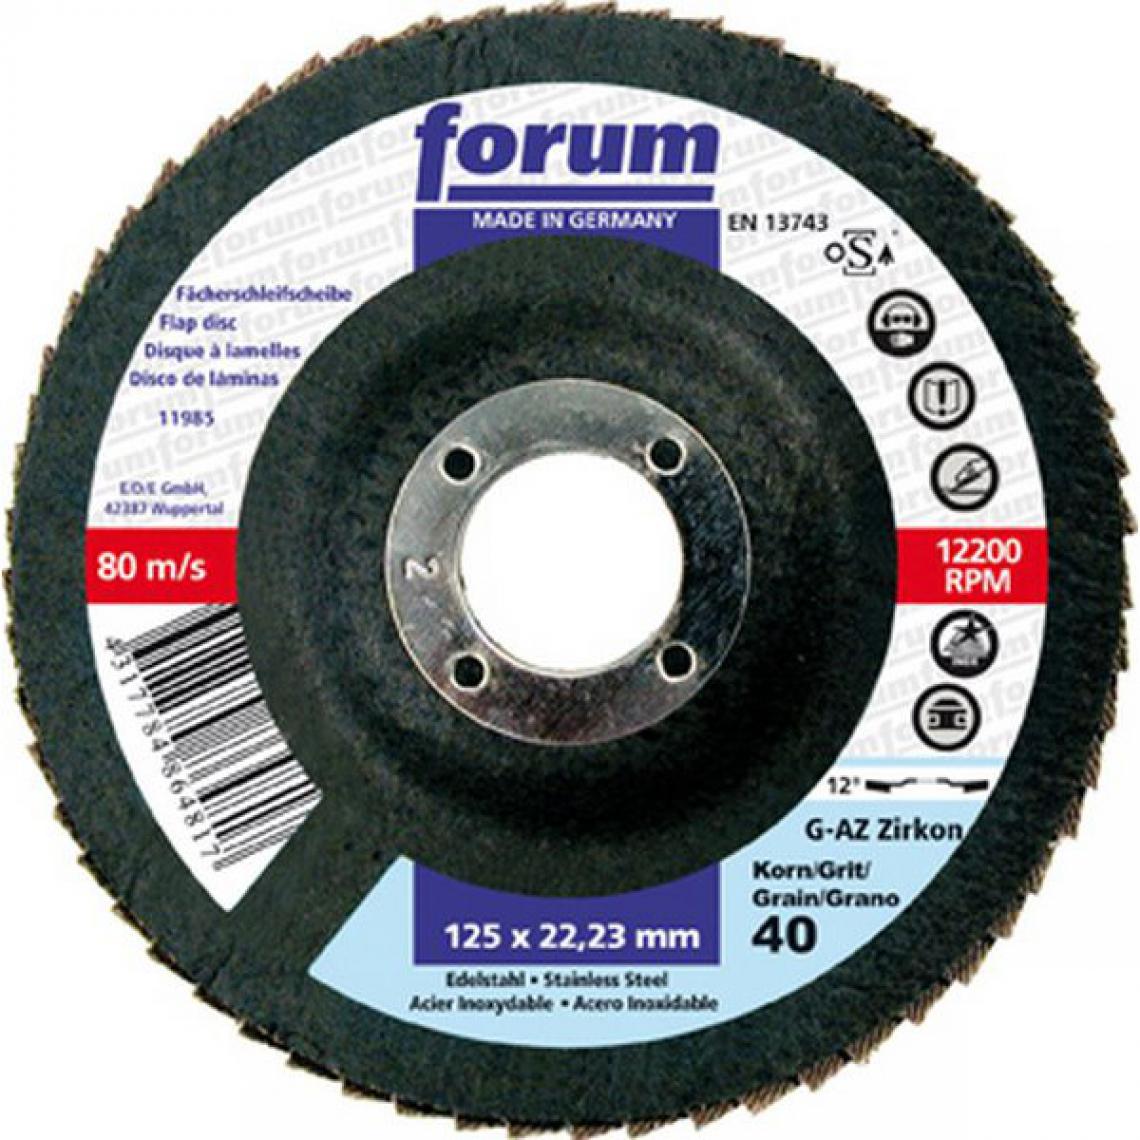 Forum - Meule-éventail Ø 115 mm (13300 tr/mn), 12° bombée, Grain : 40 - Accessoires meulage